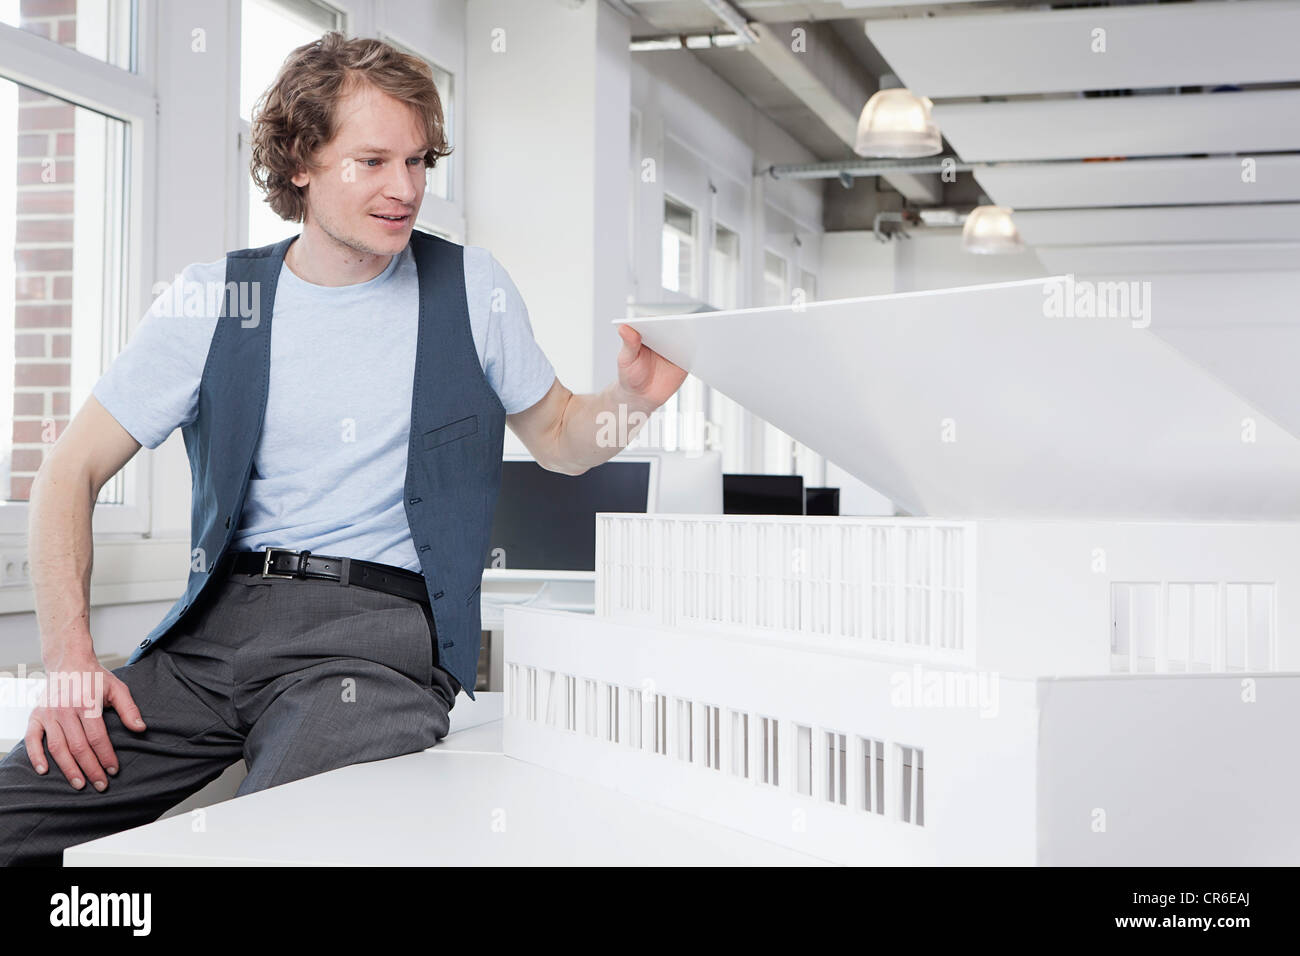 Deutschland, Bayern, München, Architekt Architekturmodell betrachten Stockfoto